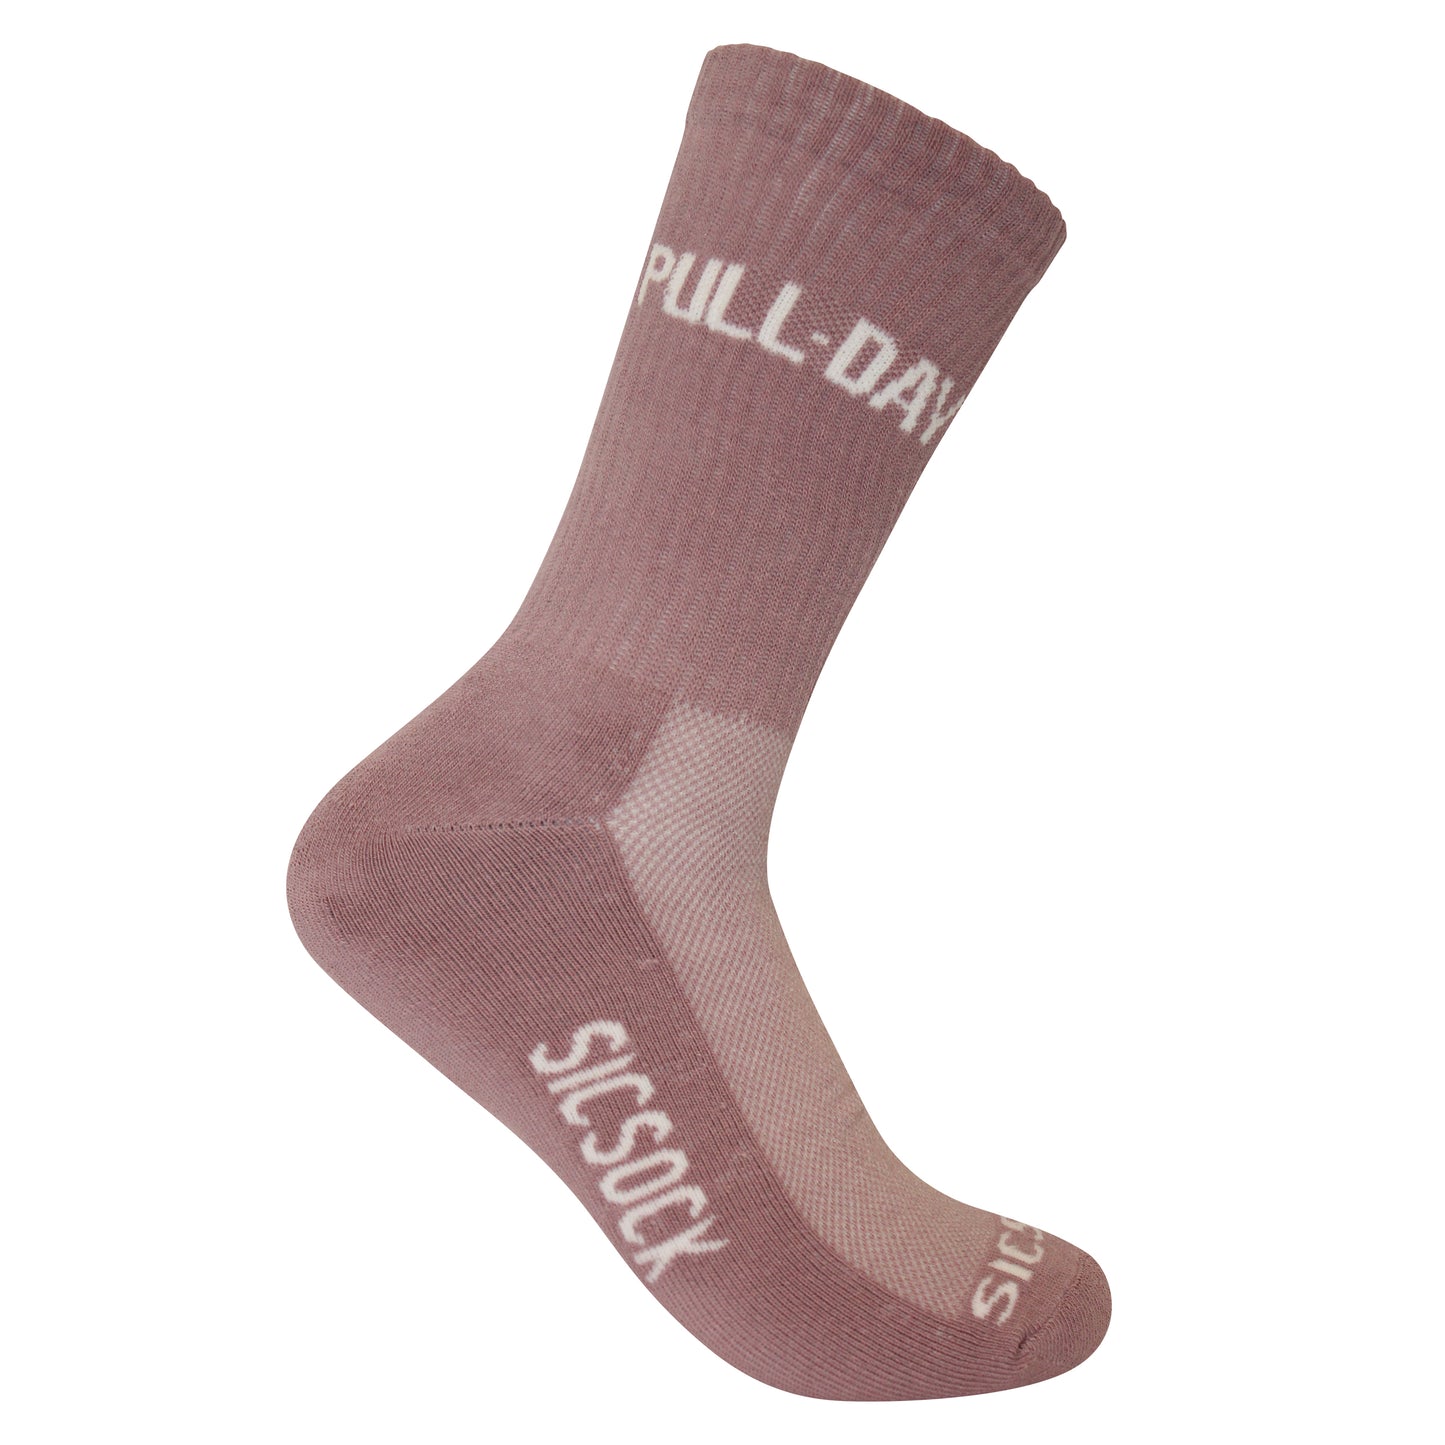 Sicsock - Gymwear Pull Day Socks